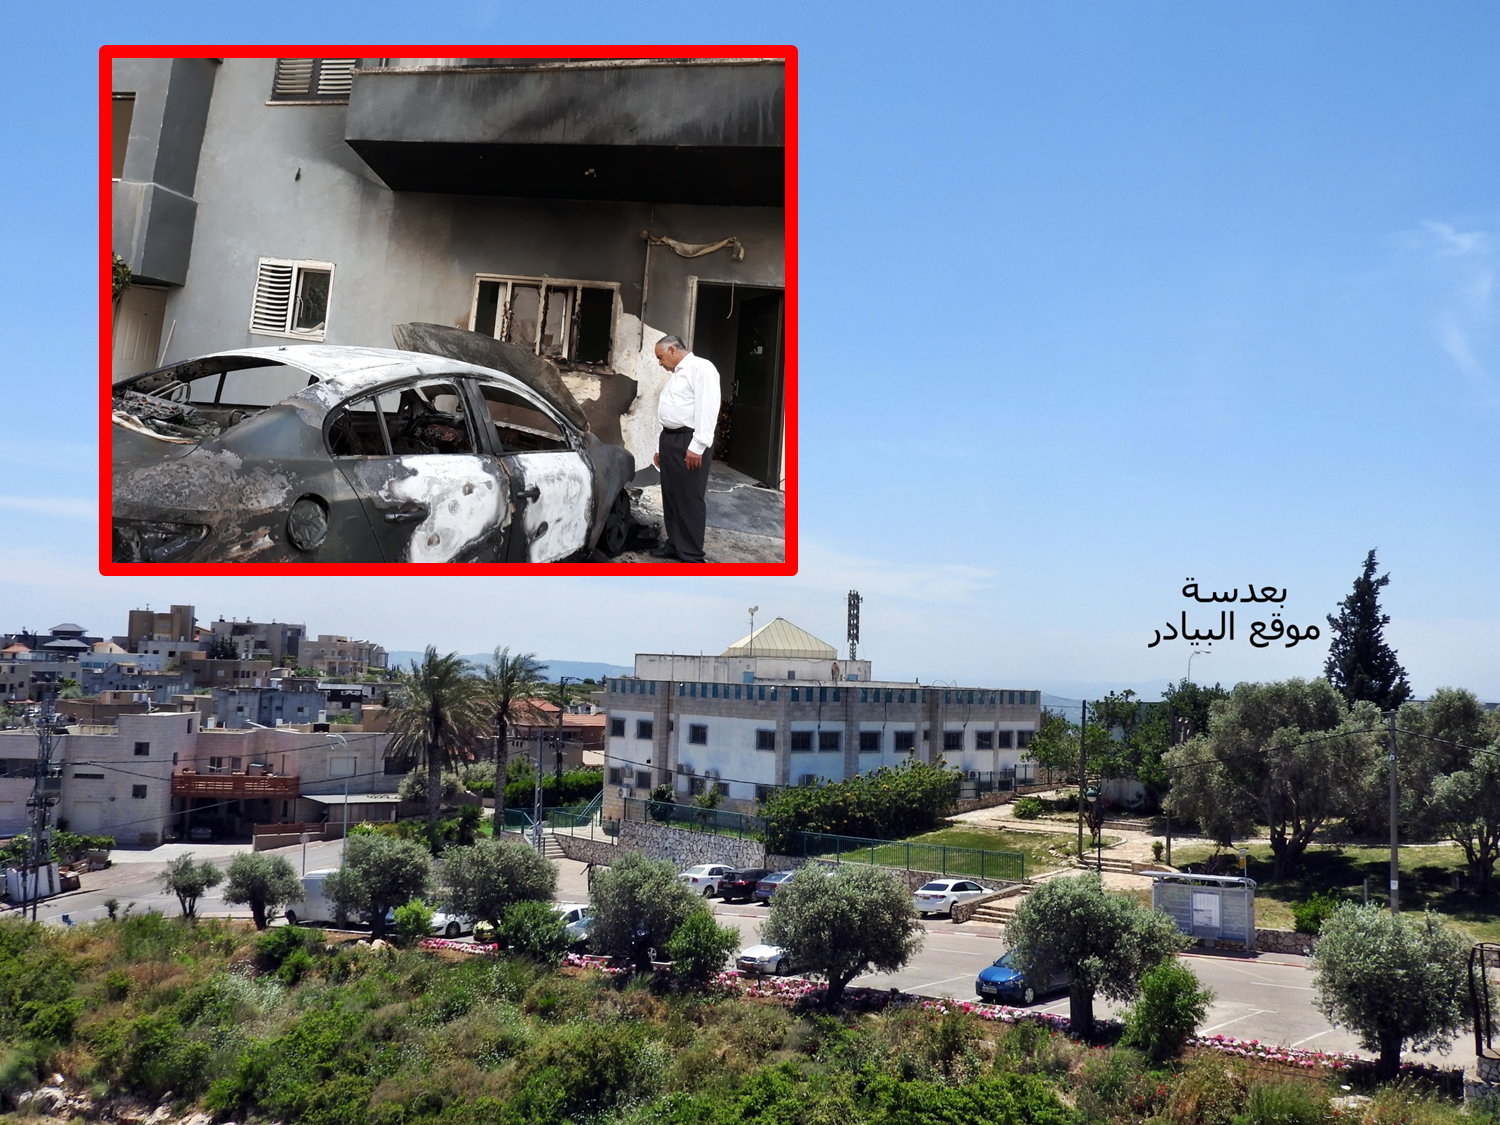 مجلس كوكب ابو الهيجاء المحلي يستنكر بشده حرق مركبة الحاج حسين علي ابو الهيجاء